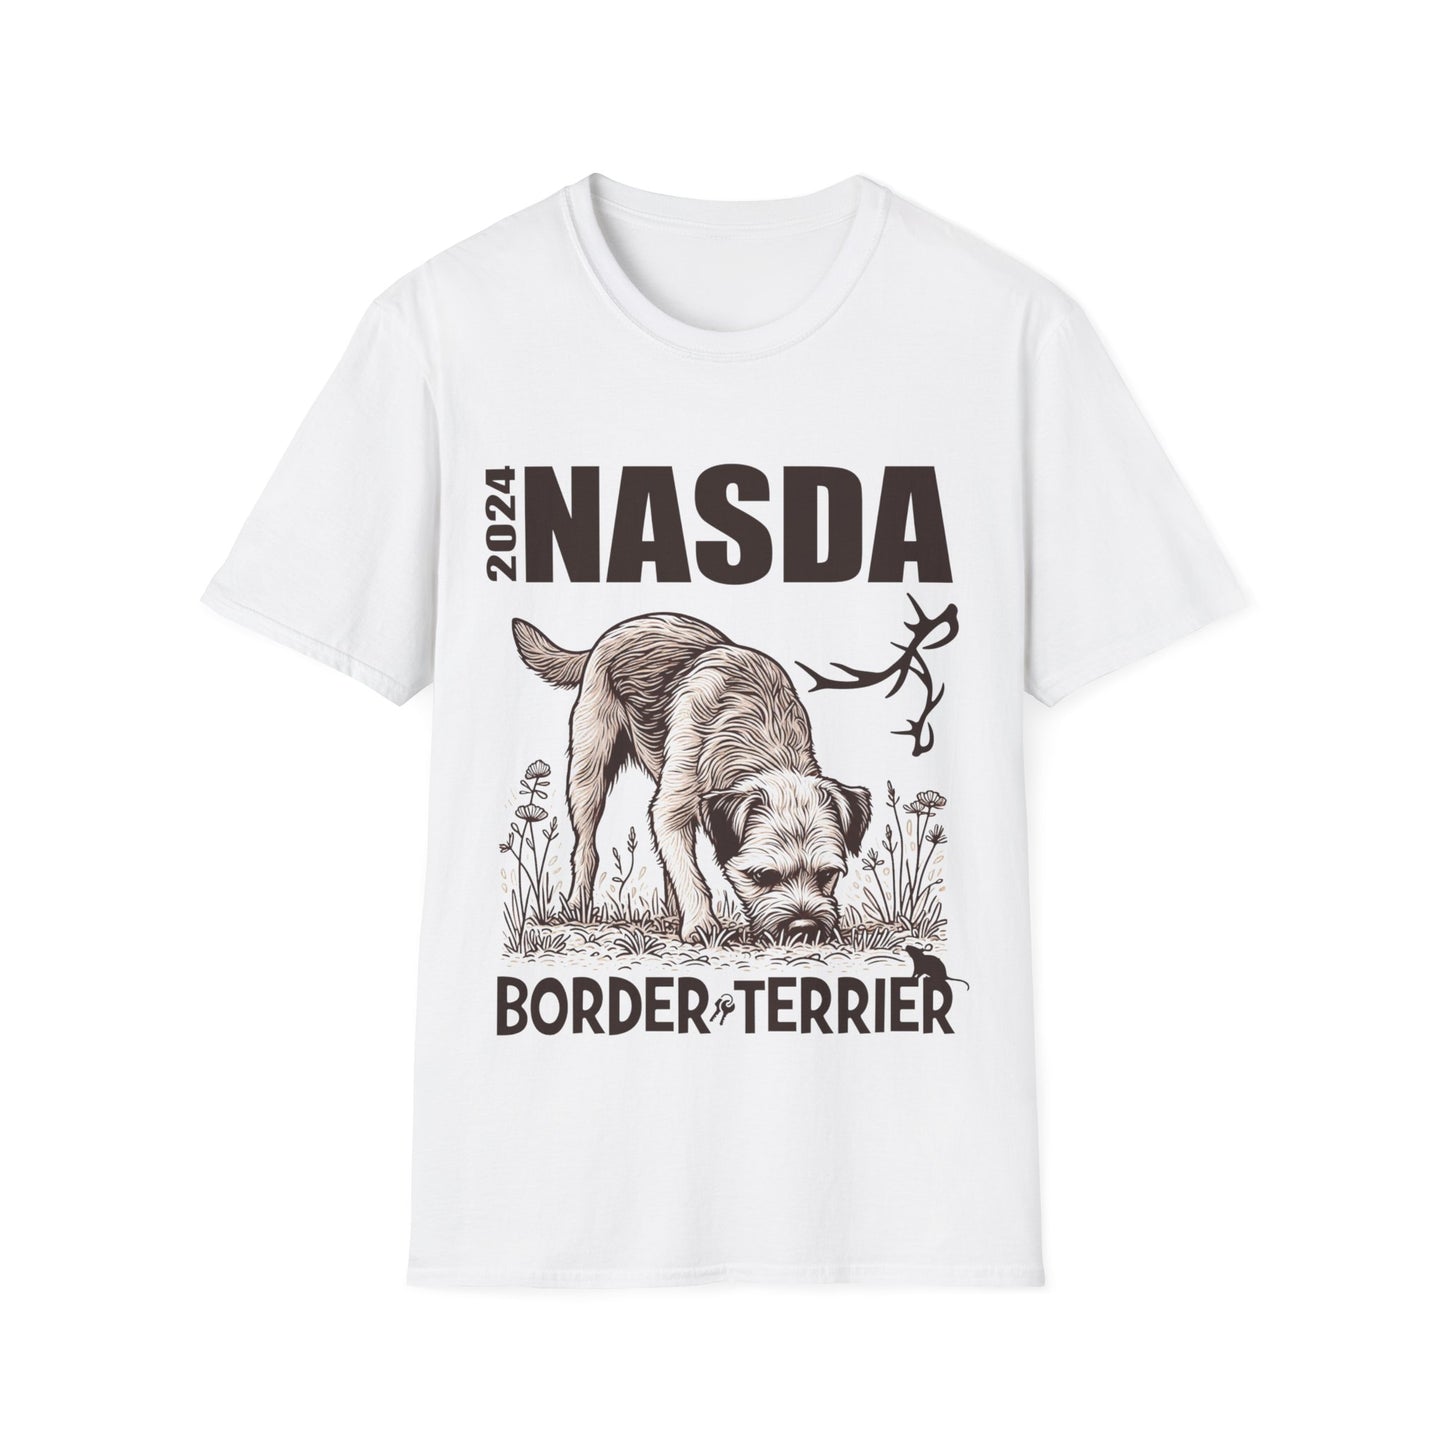 KATIE & ELLIE  - BORDER TERRIER.2 - NASDA  Unisex Softstyle T-Shirt